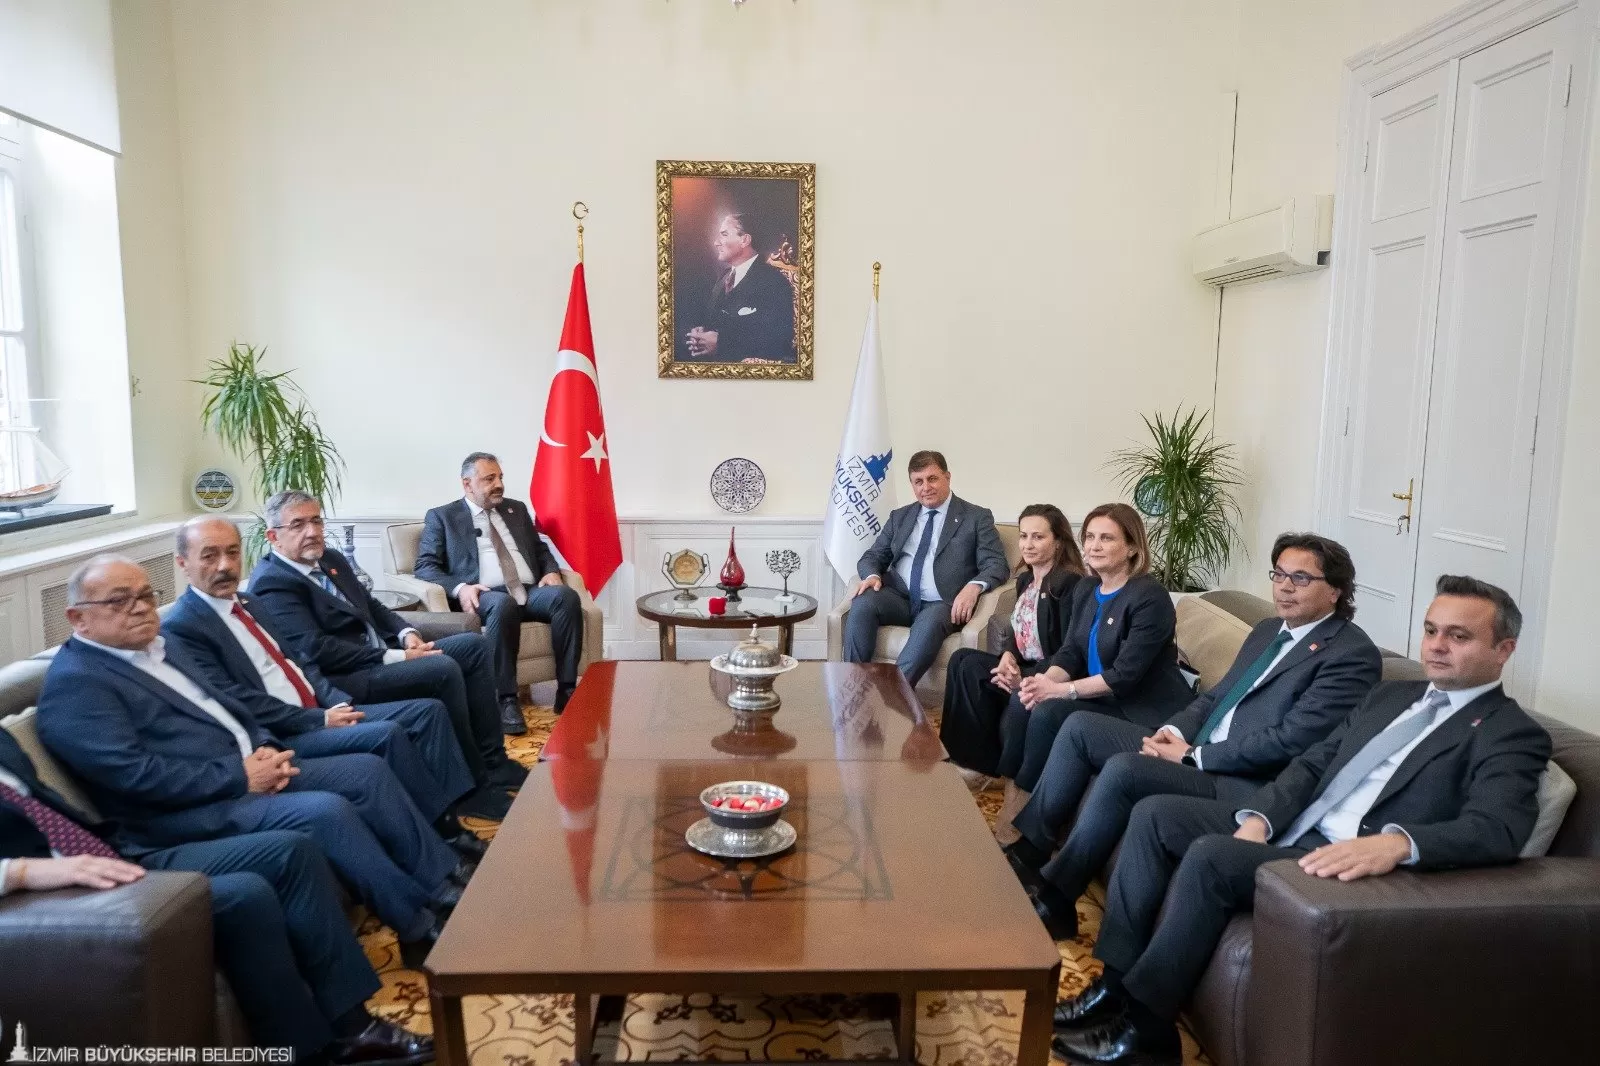 CHP Ege Bölgesi il başkanları, İzmir Büyükşehir Belediye Başkanı Dr. Cemil Tugay'ı ziyaret ederek 31 Mart yerel seçimlerinde elde edilen zaferi değerlendirdi.